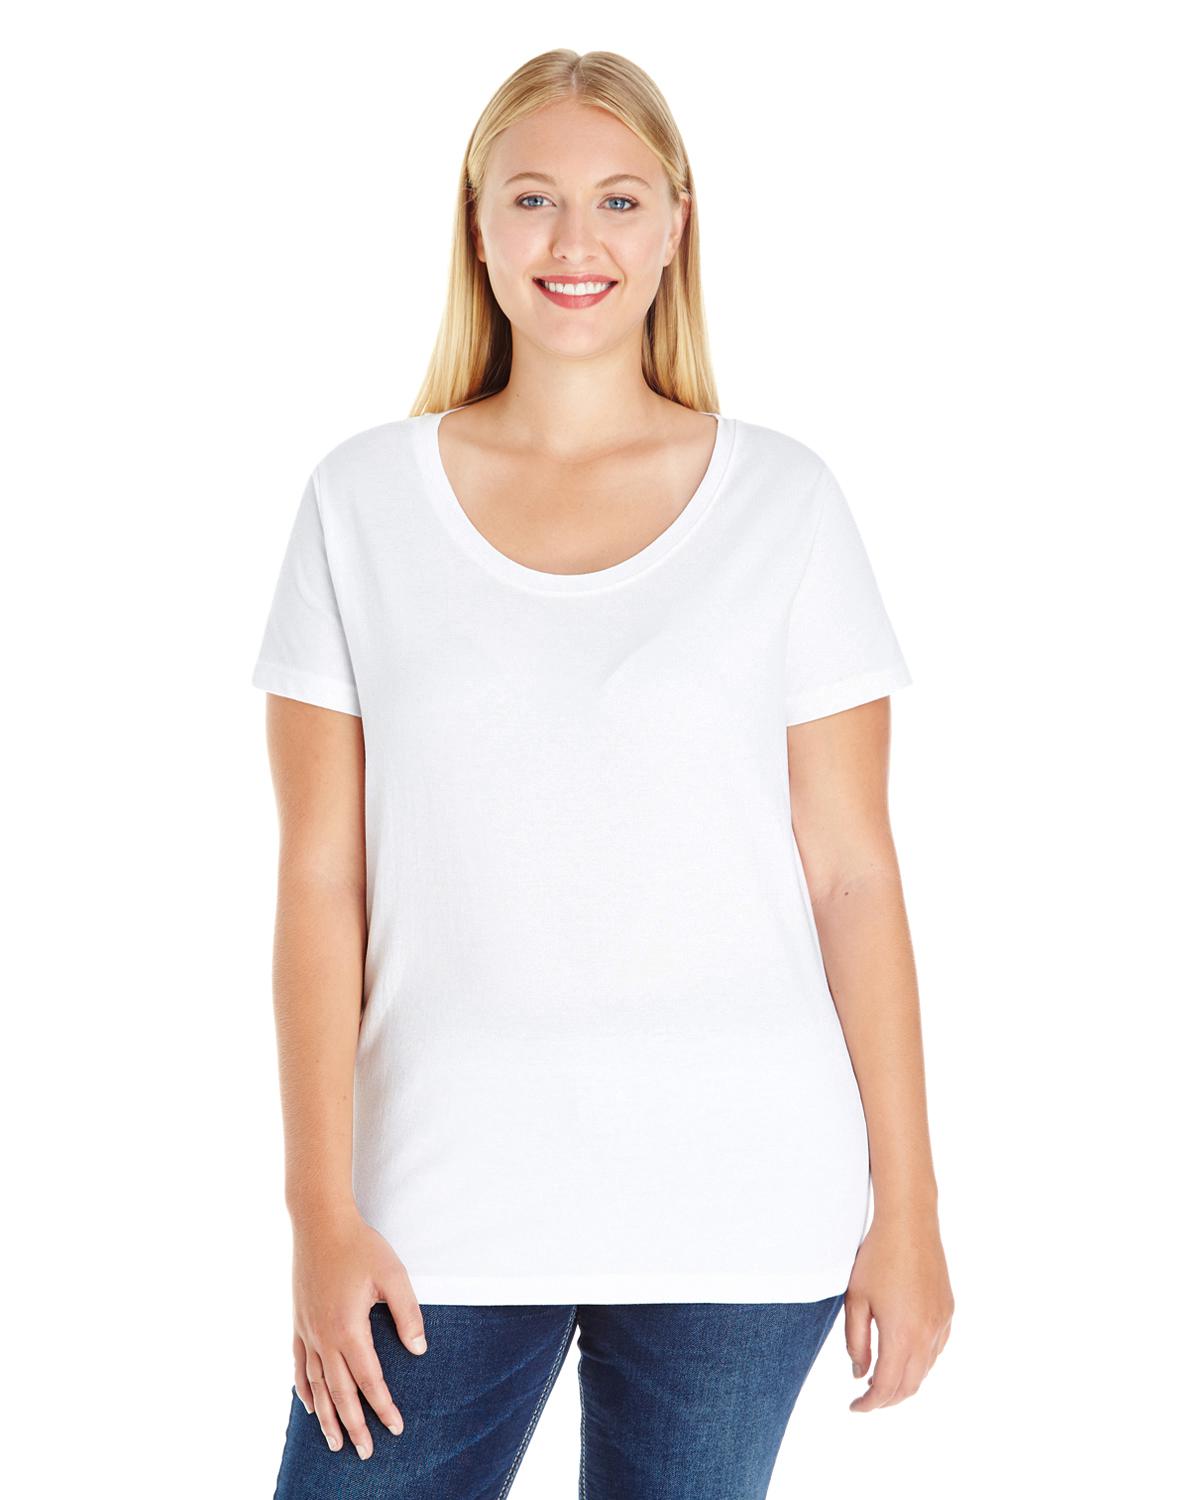 LAT Apparel 3804 Ladies Curvy Premium Jersey T-Shirt - Shirtmax